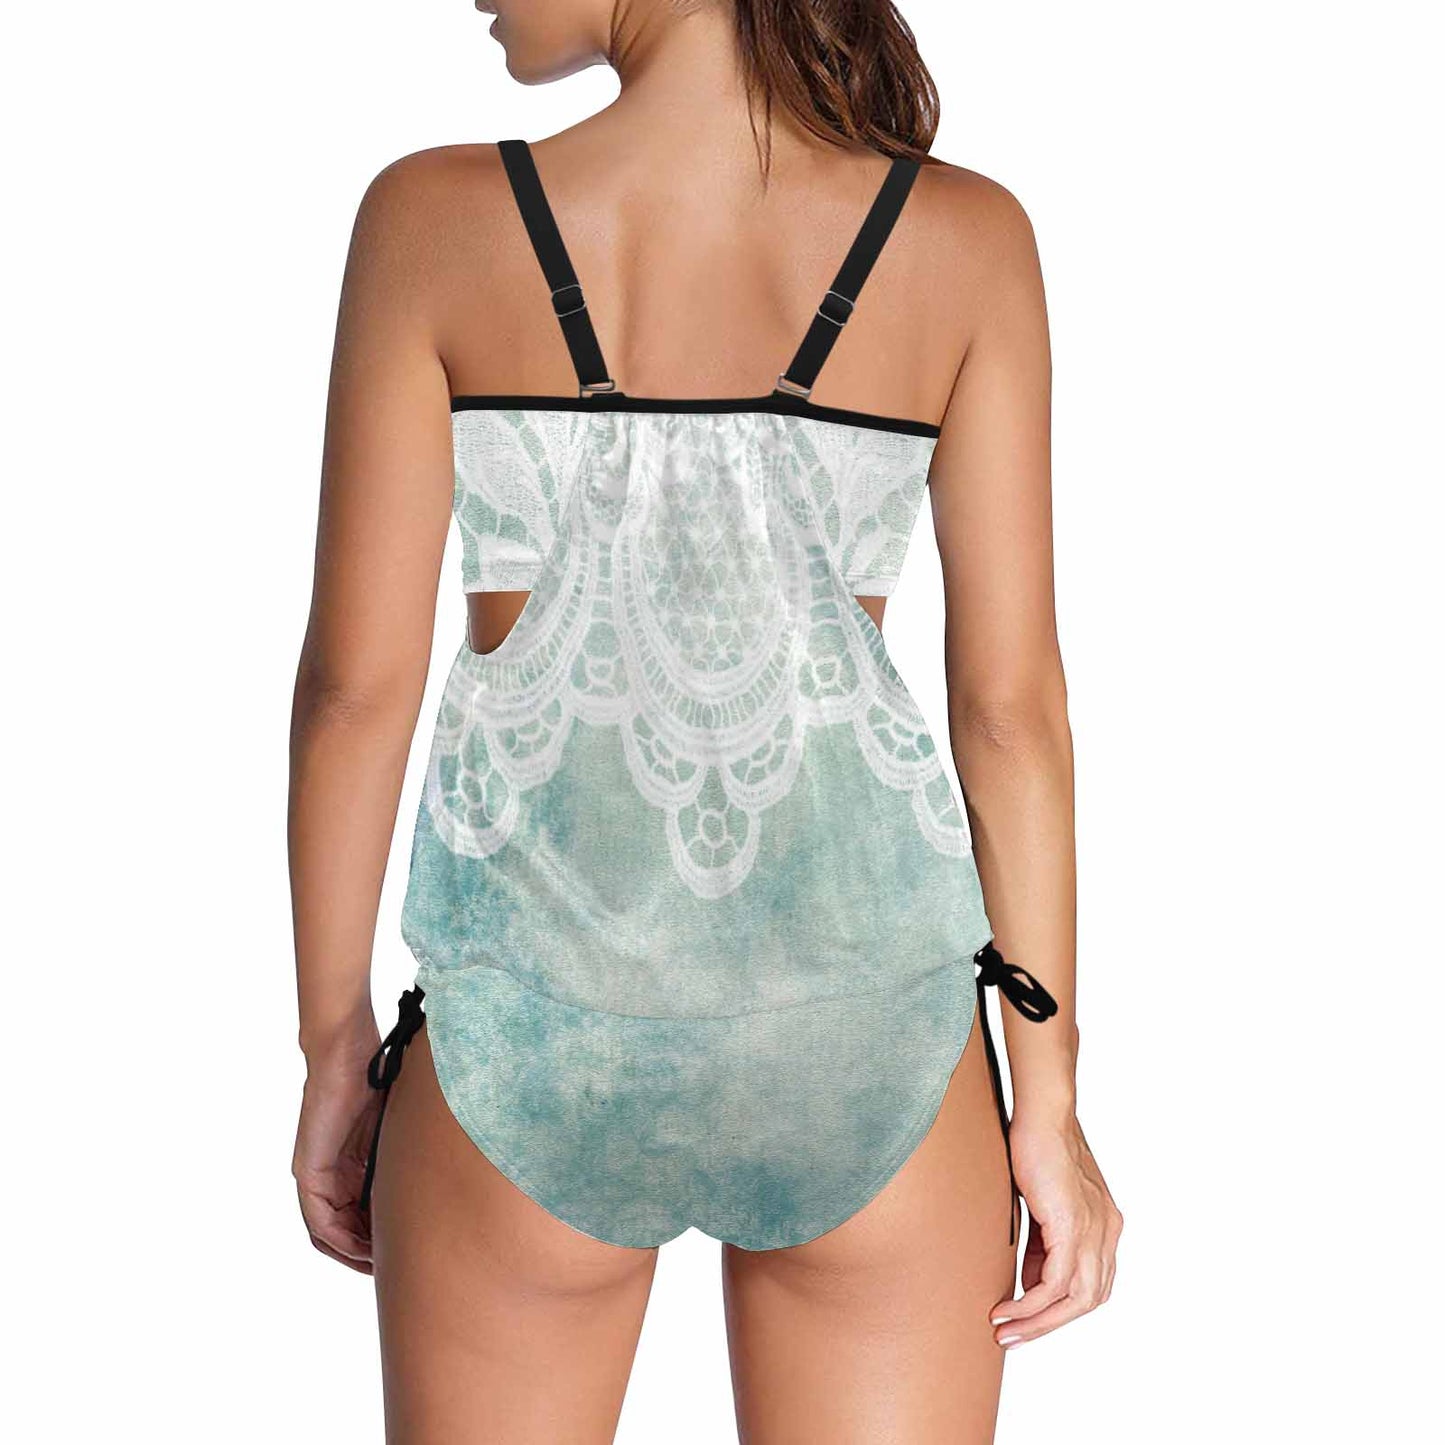 Tankini cover belly swim wear, Printed Victorian lace design 41